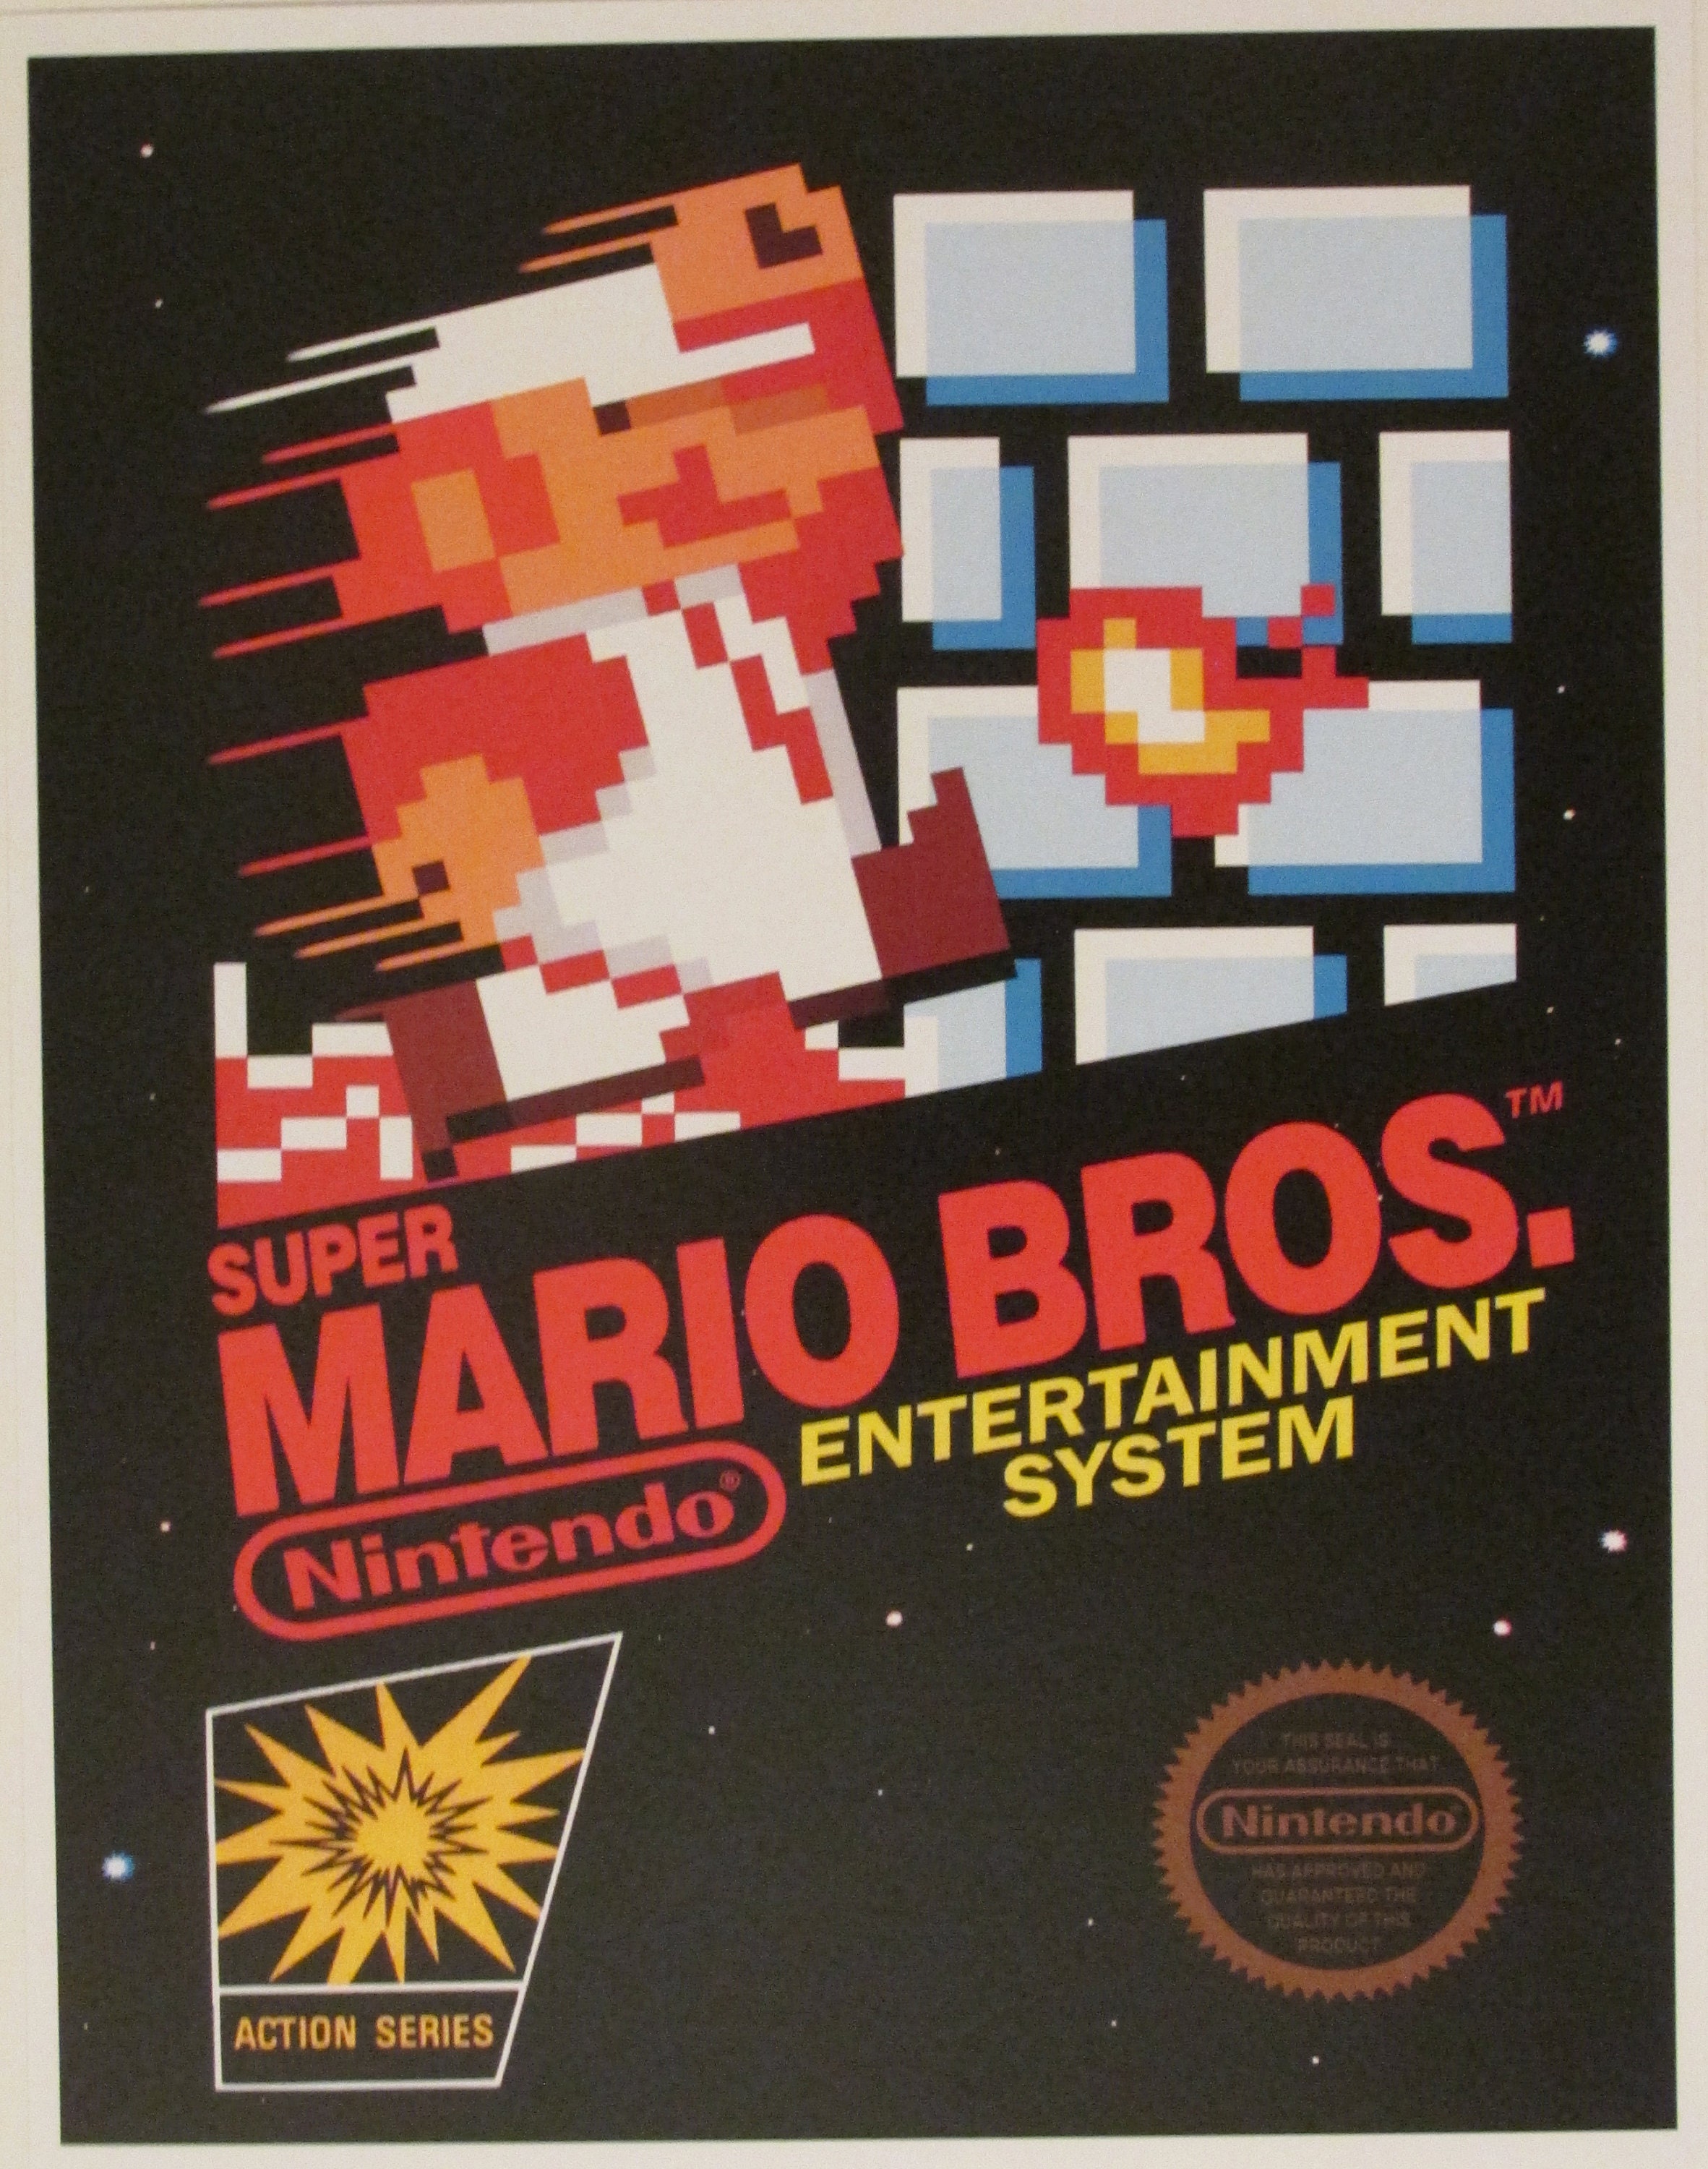 Nintendo Super Mario Bros NES/SNES Retro Video Game Box Art Reproduction  Four 8.5x11 Poster Prints Mario Bros 1, 2, 3, Super Mario World - Etsy Hong  Kong